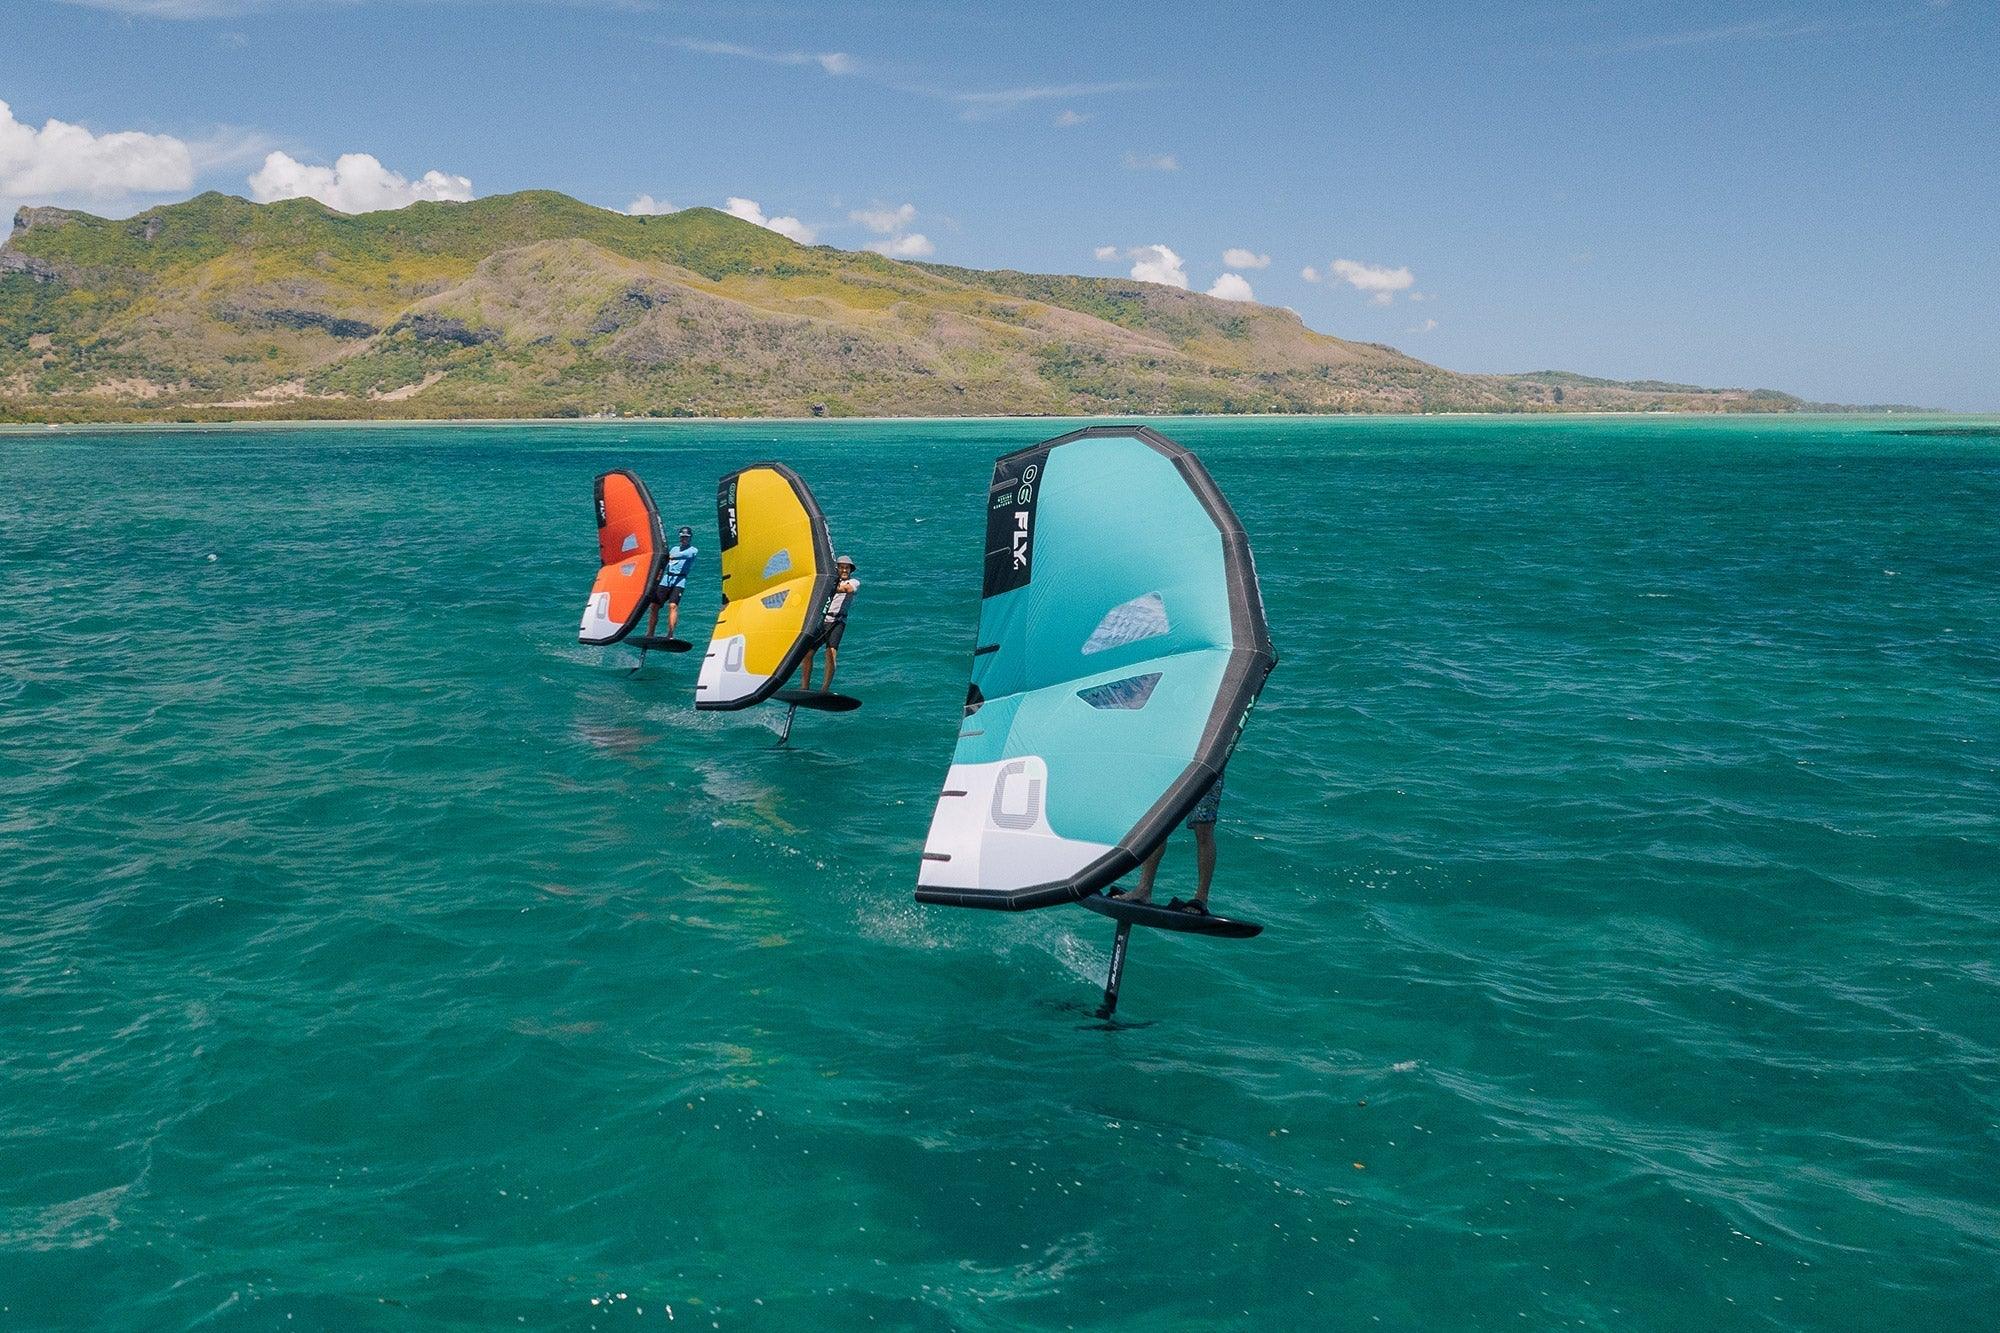 Ozone FLY V1 Wing Surfer - The Kite Loft